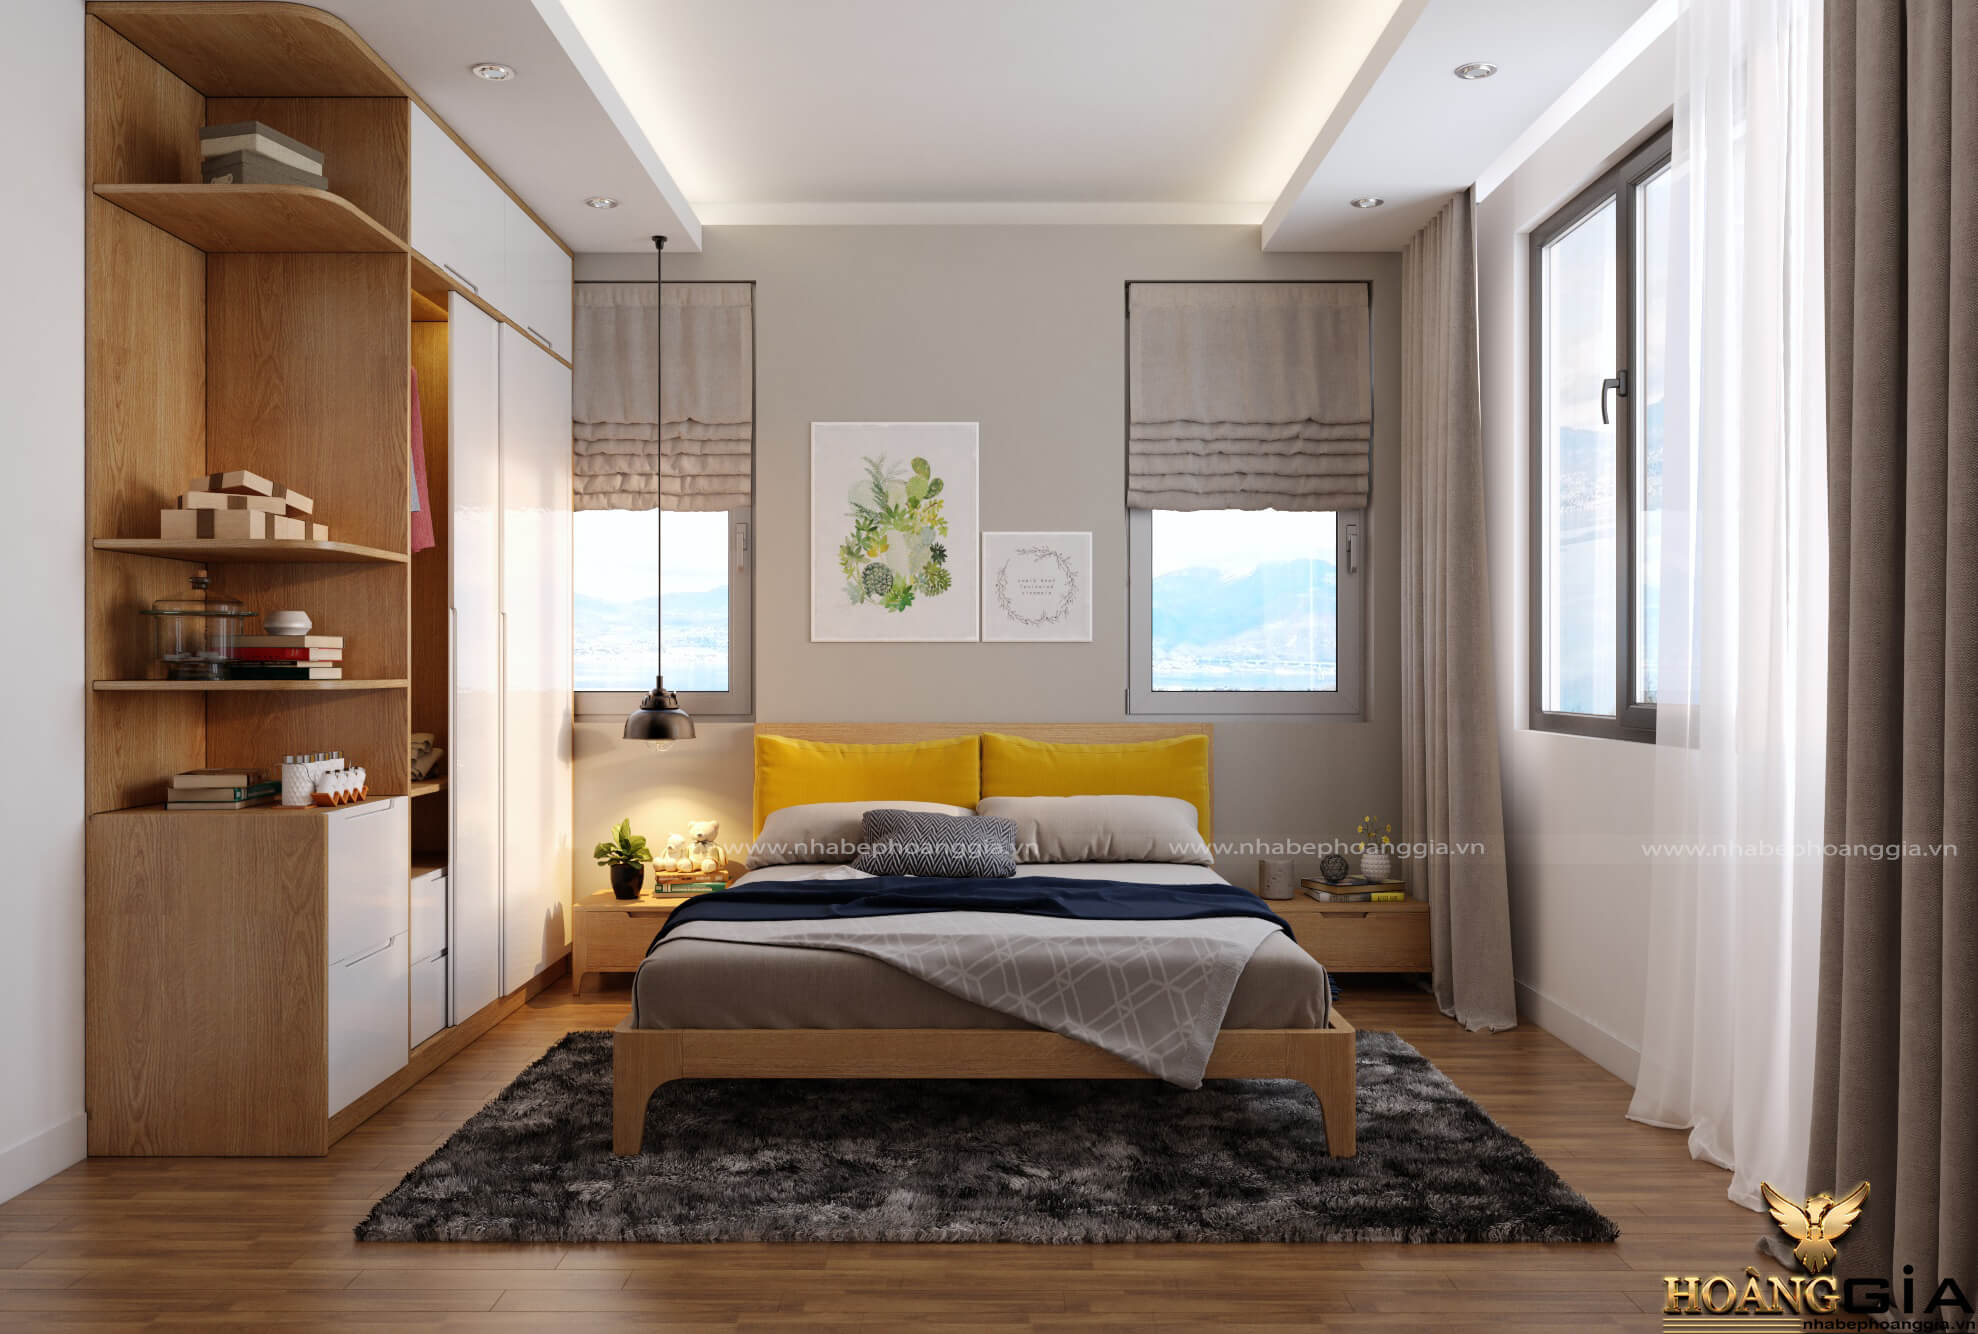 Mẫu phòng ngủ phong cách hiện đại đơn giản đầy ấn tượng